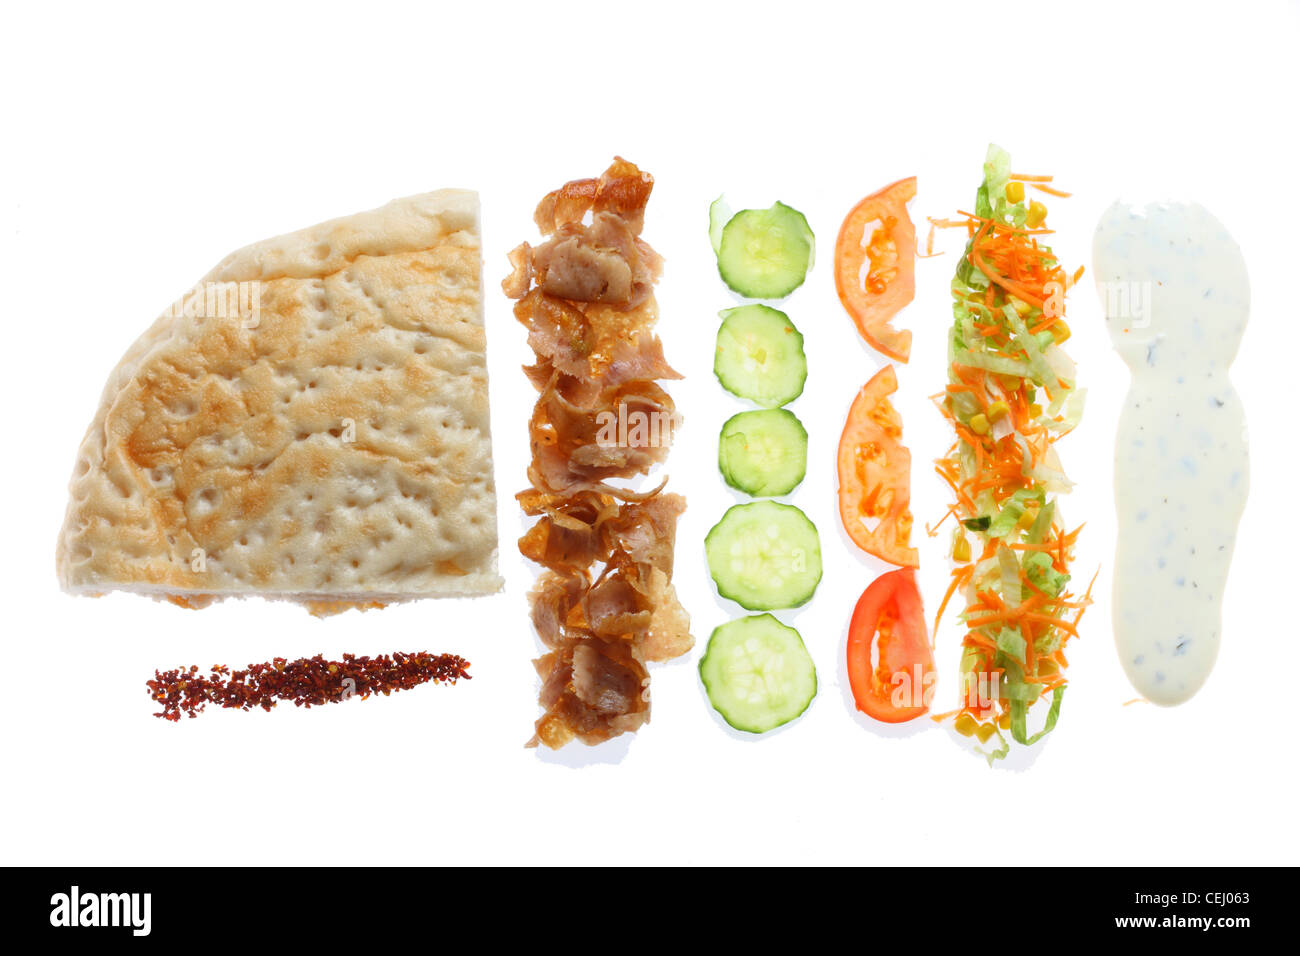 Zusammenstellung der Zutaten von einem typischen türkischen Kebab. Fleisch, Salat, Knoblauch-Sauce, Gewürze, Grube Brot. Stockfoto